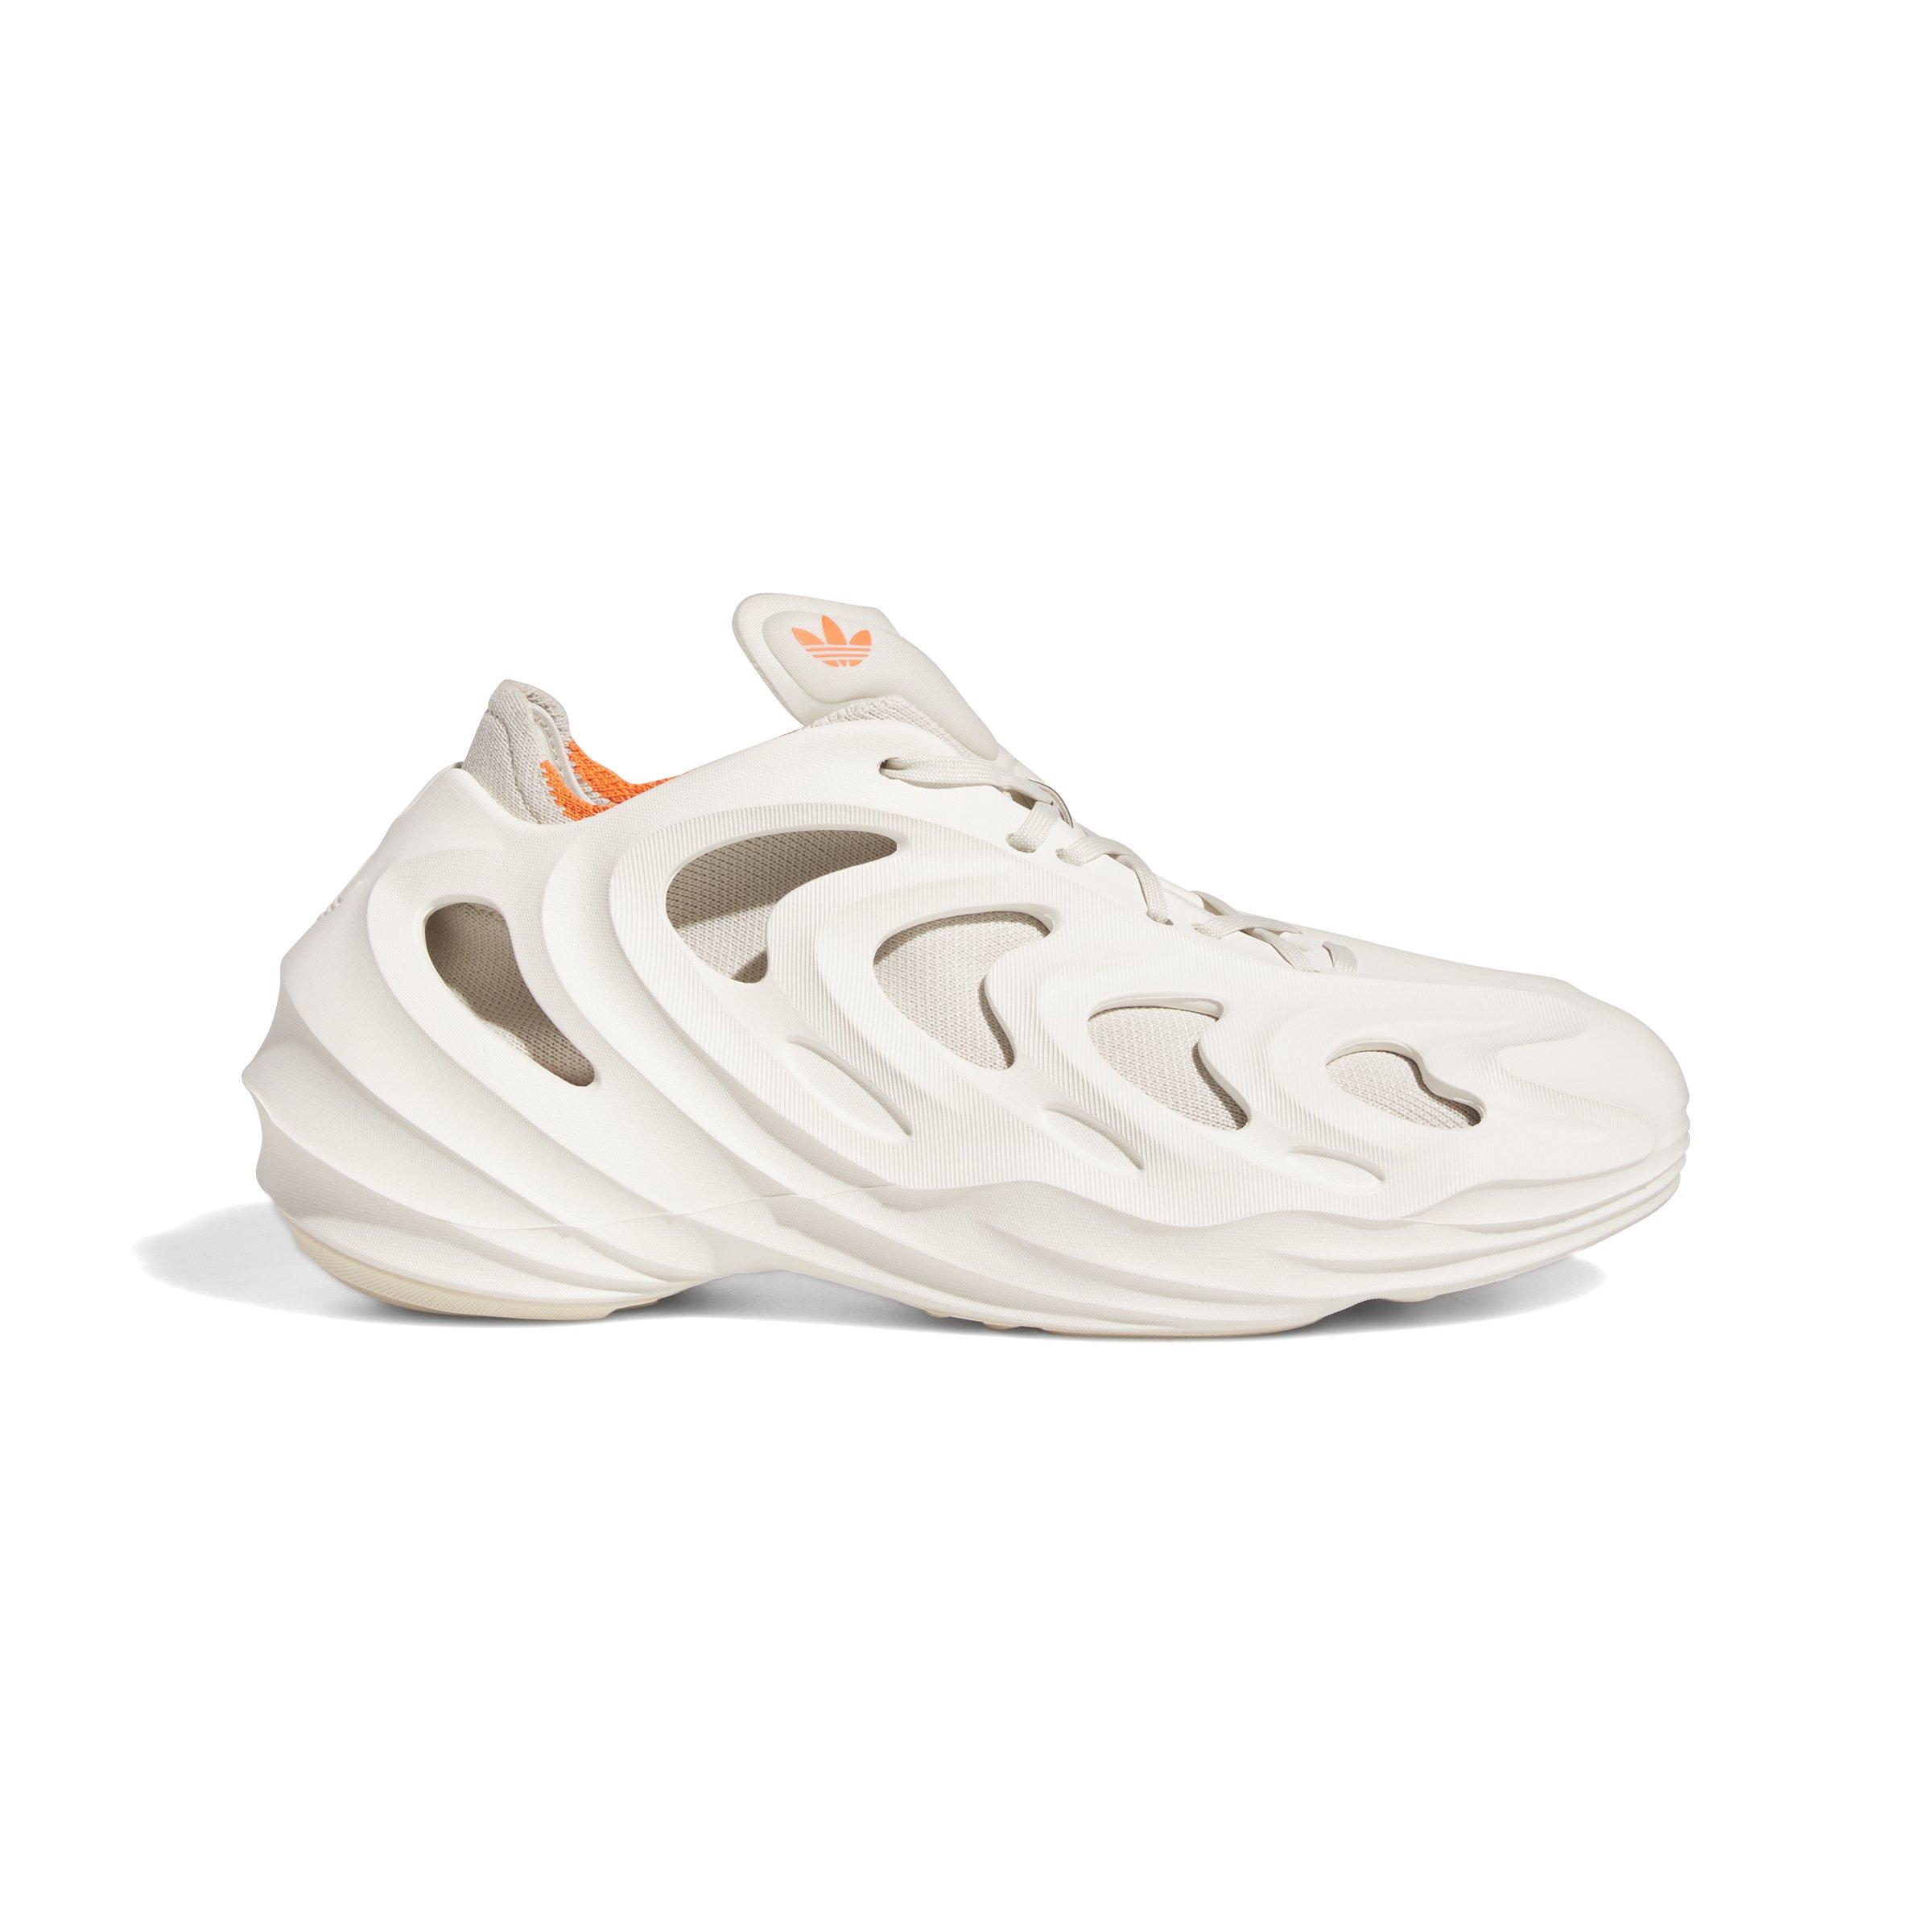 adidas Originals FOM Quake sneakers in off-white